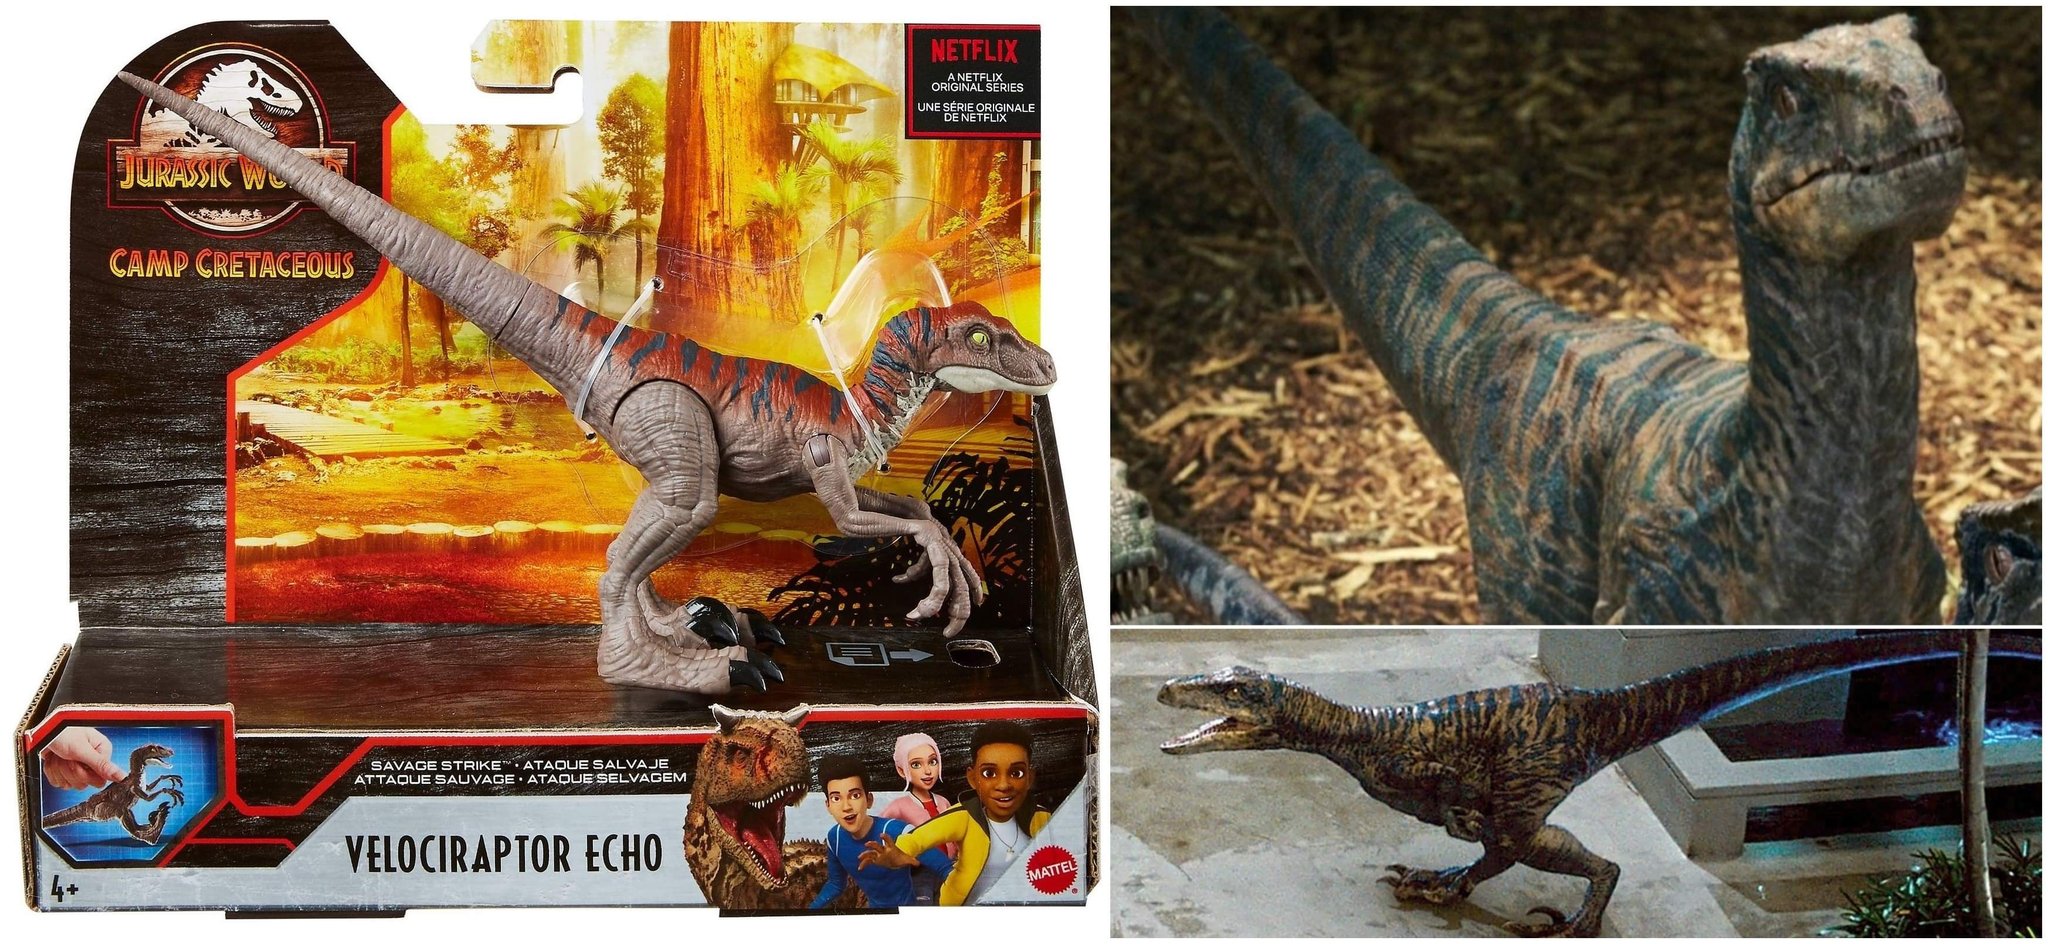 Jurassic World Dinosaure Dino Rivaux Velociraptor Echo /& Colorforms Autocollant Histoire